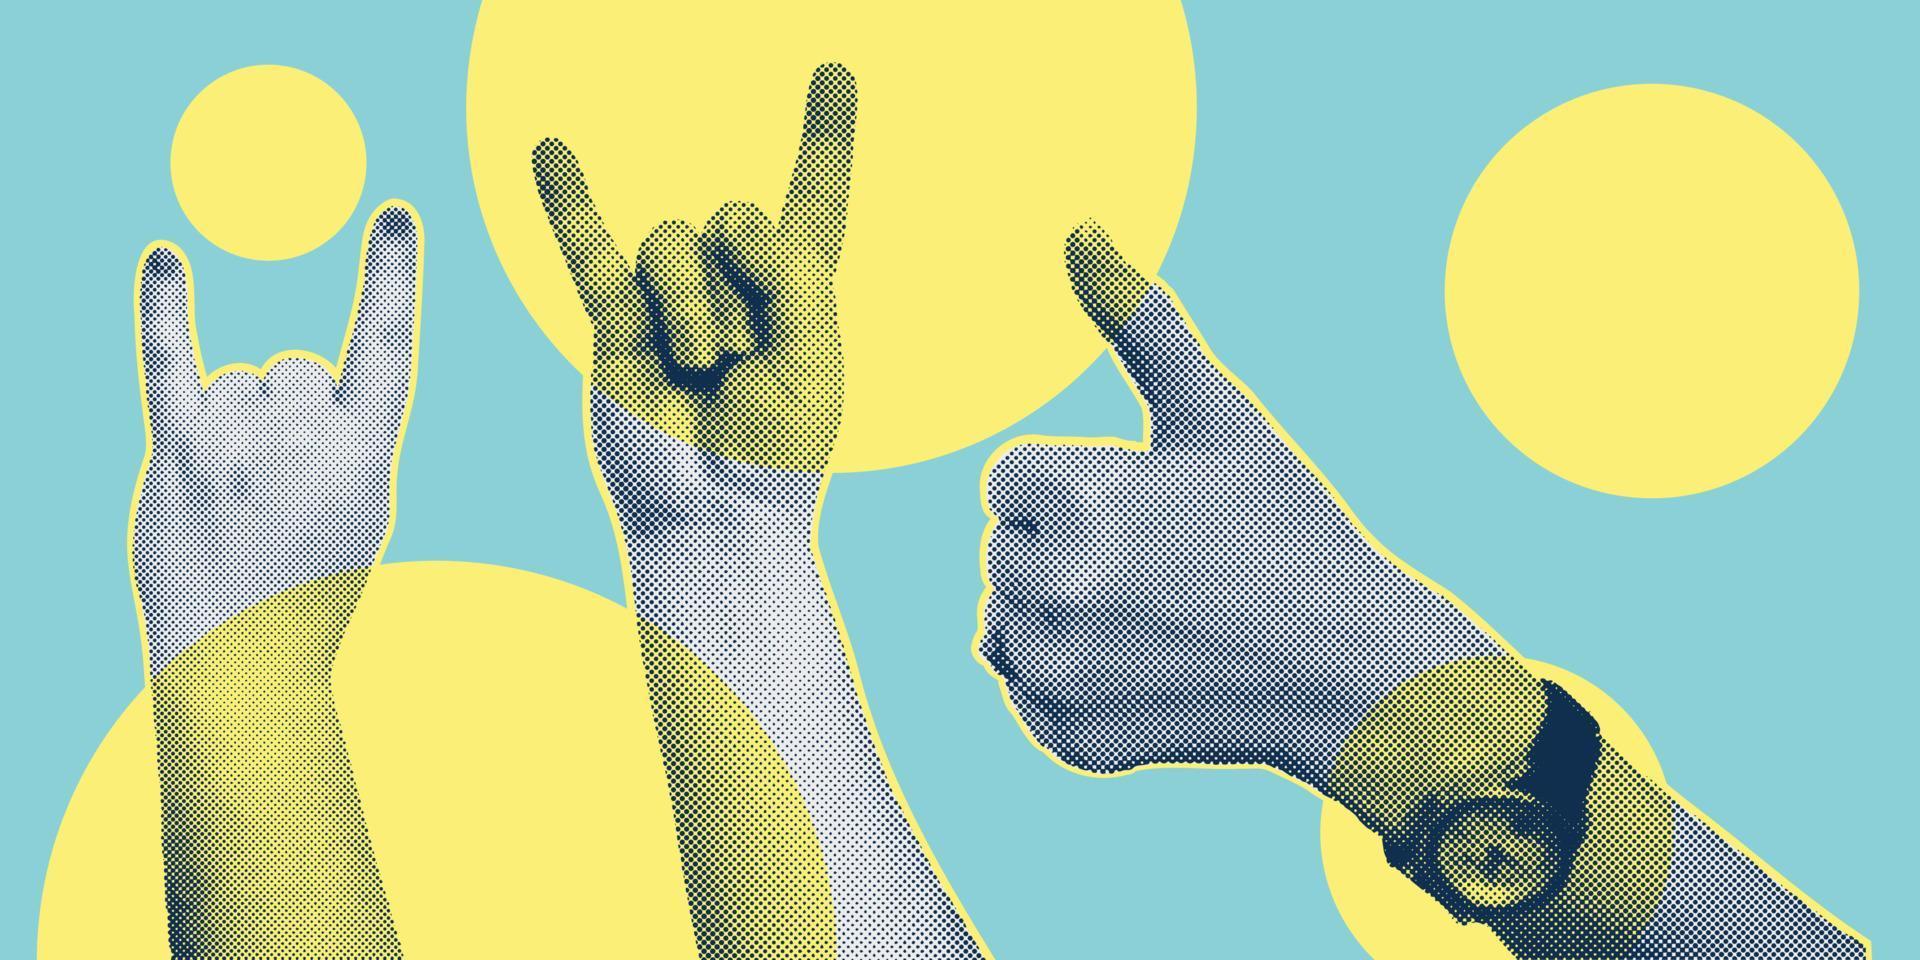 modieus collage met hand- gebaren, uitknippen vormen symbool winnen, Leuk vinden, punk. grunge halftone retro banier poster ontwerp. concept van protest, confrontatie, strijd, staking, zege. vector illustratie